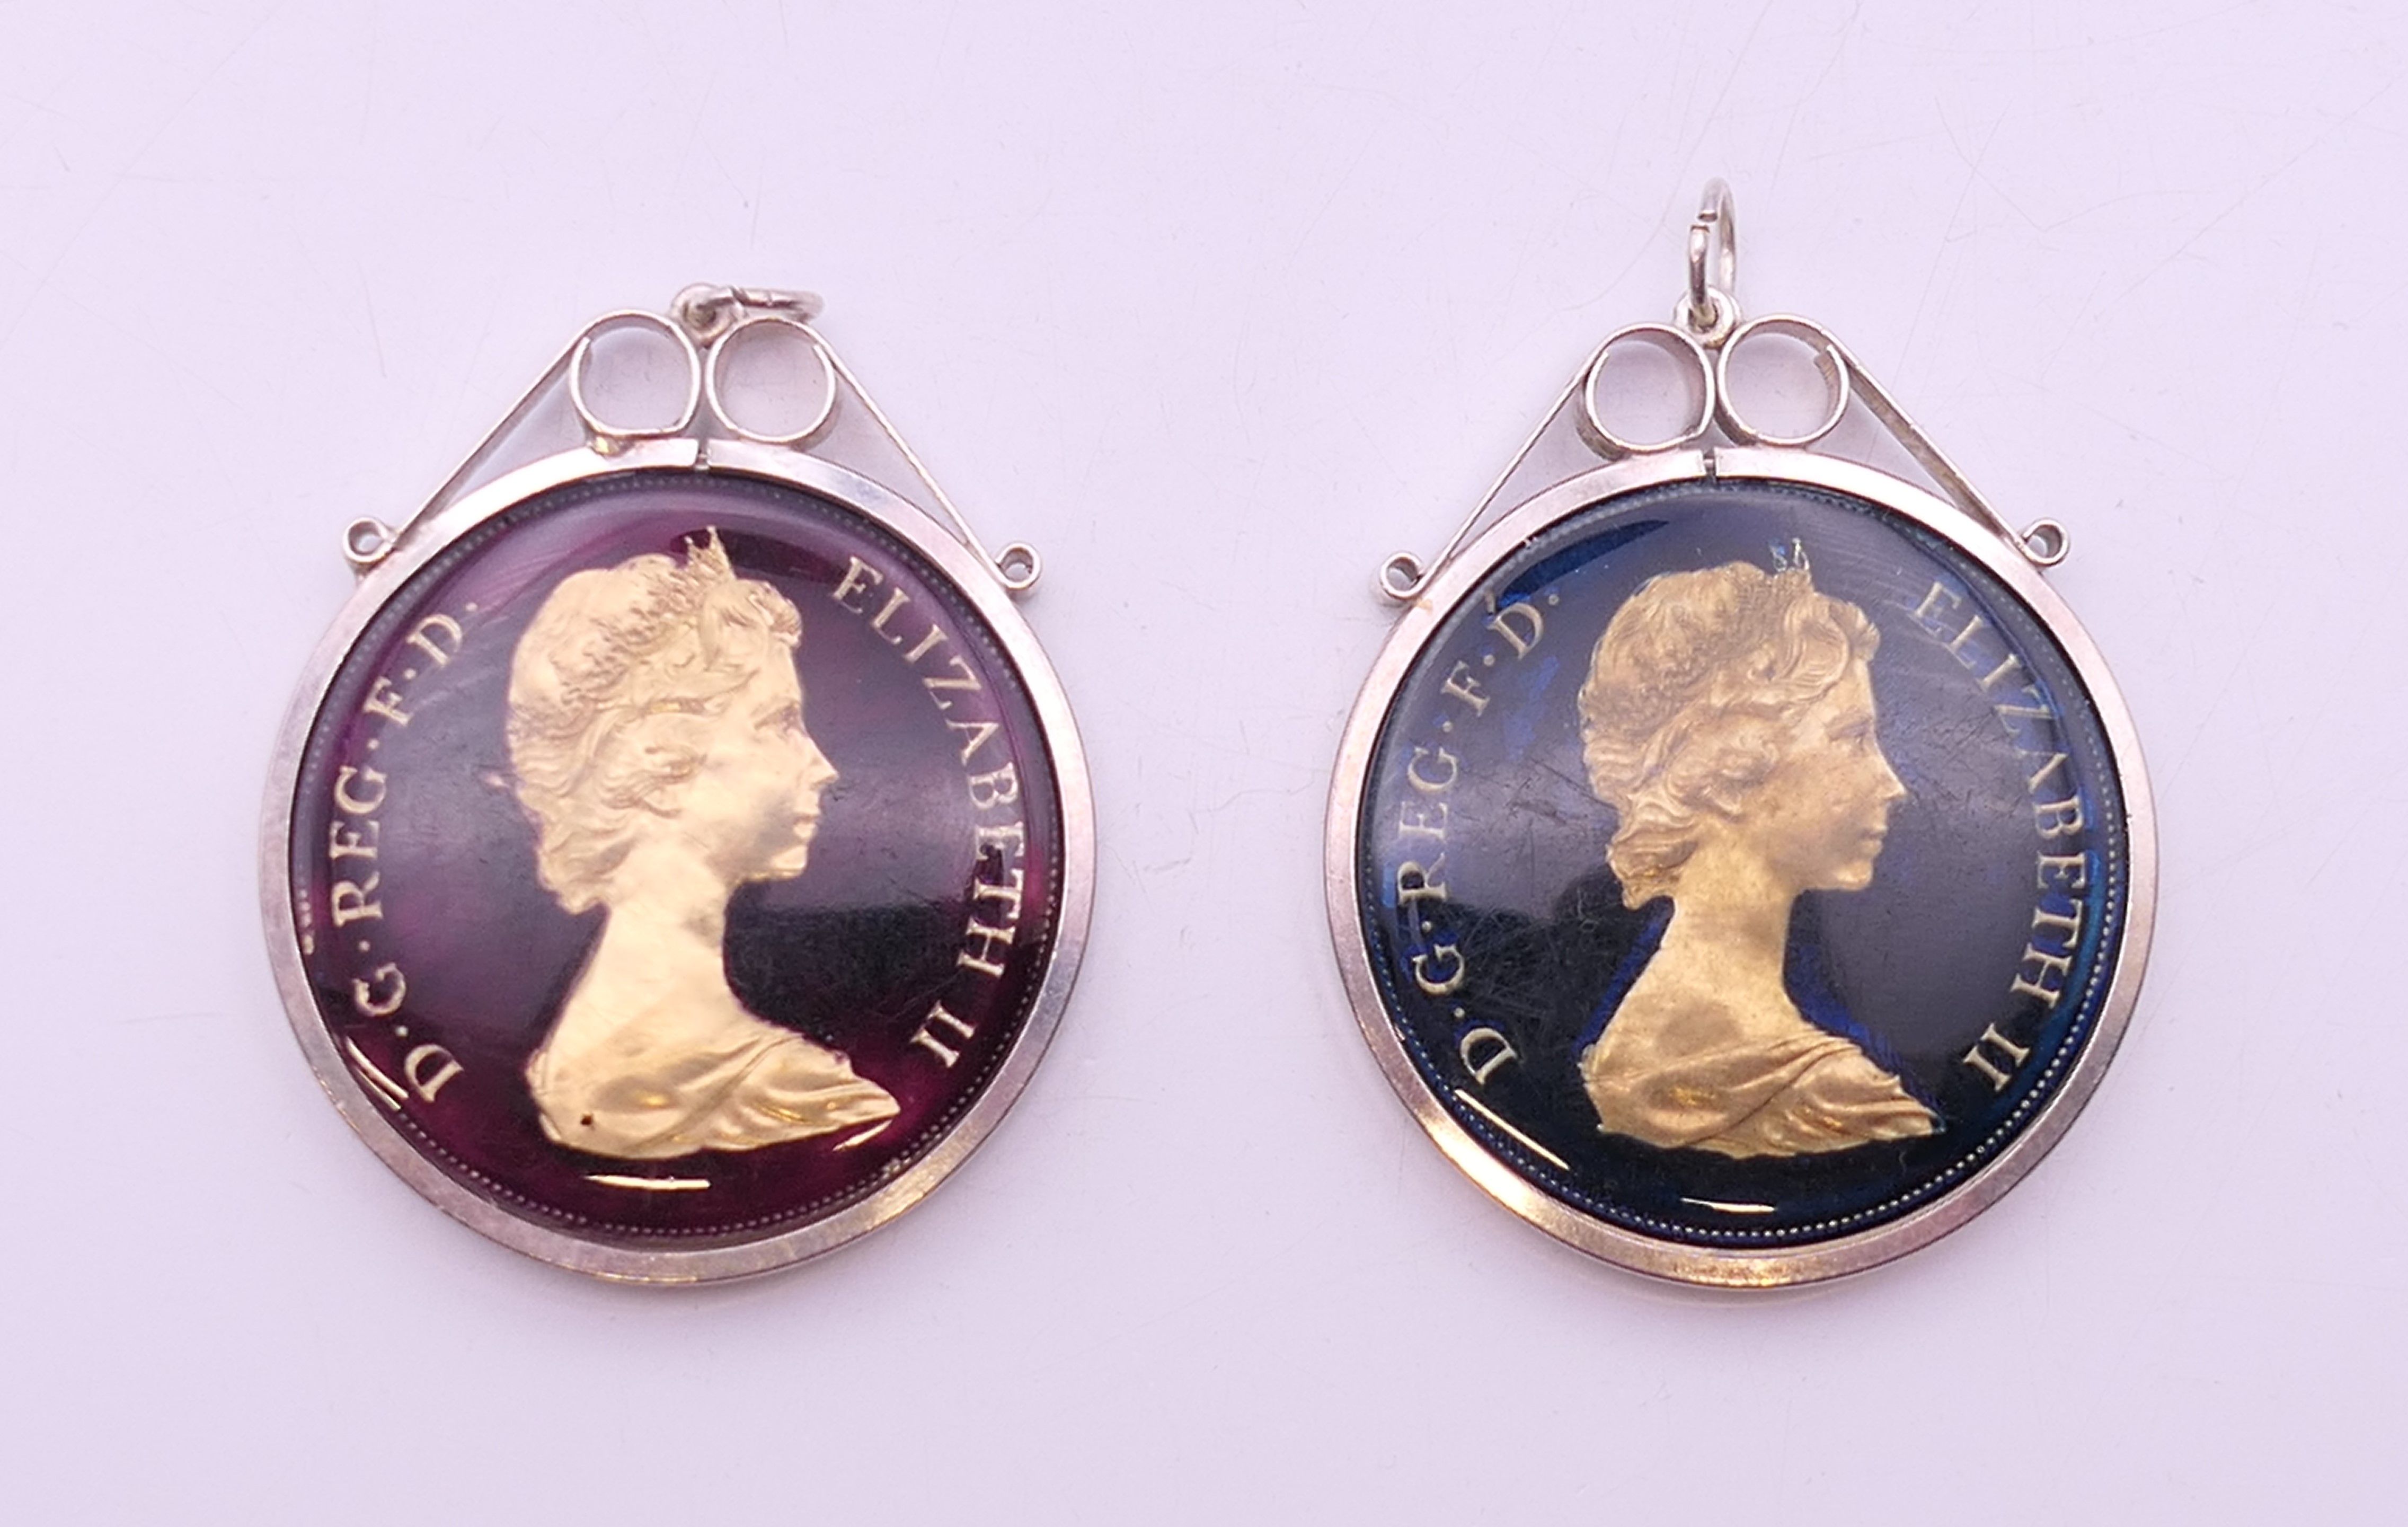 Two Queen Elizabeth II enamelled crowns, in silver mounts. Each 4.5 cm high including mount.